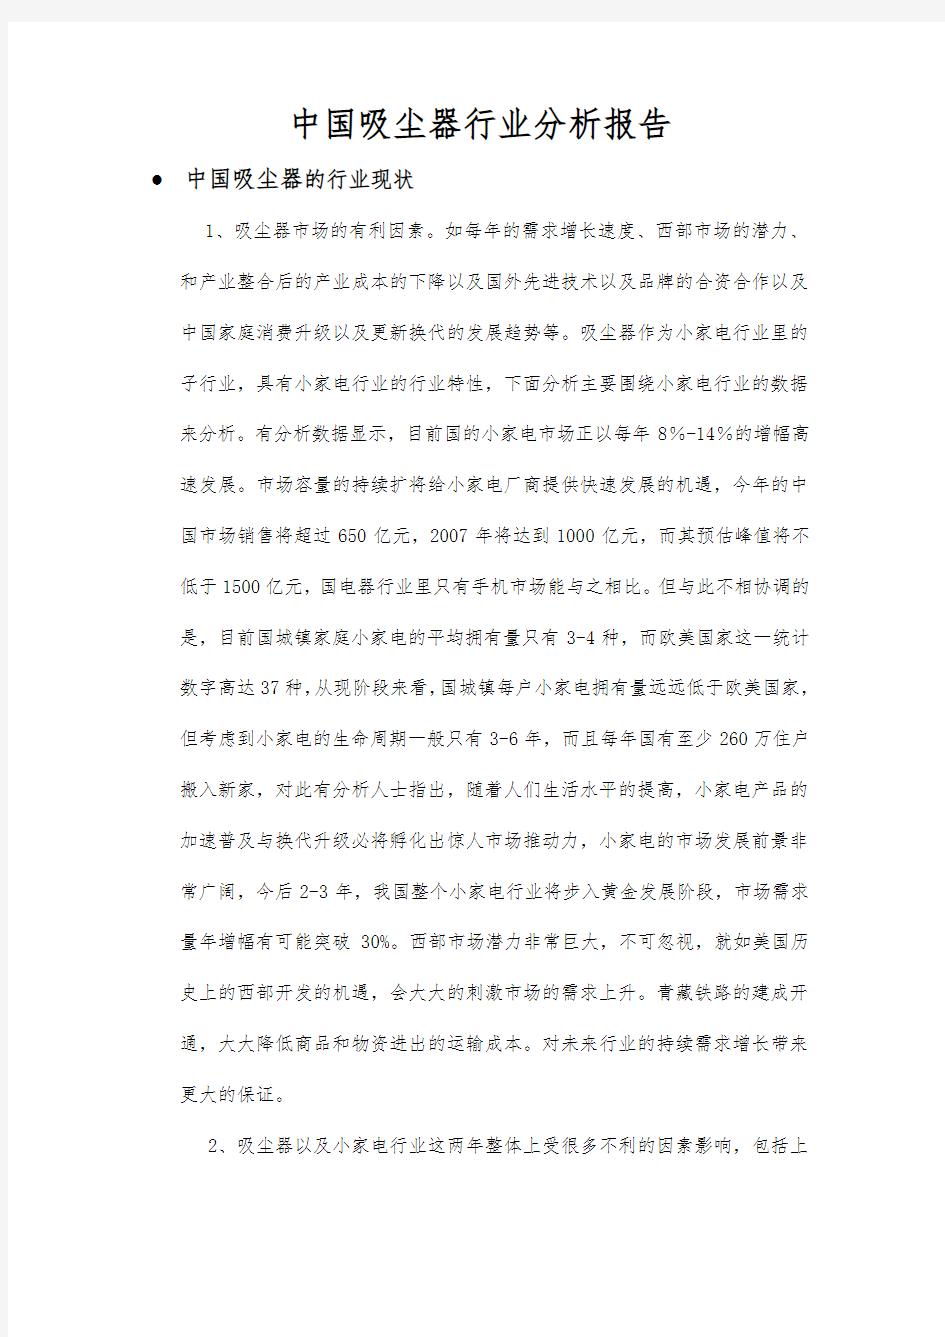 中国吸尘器行业分析报告文案